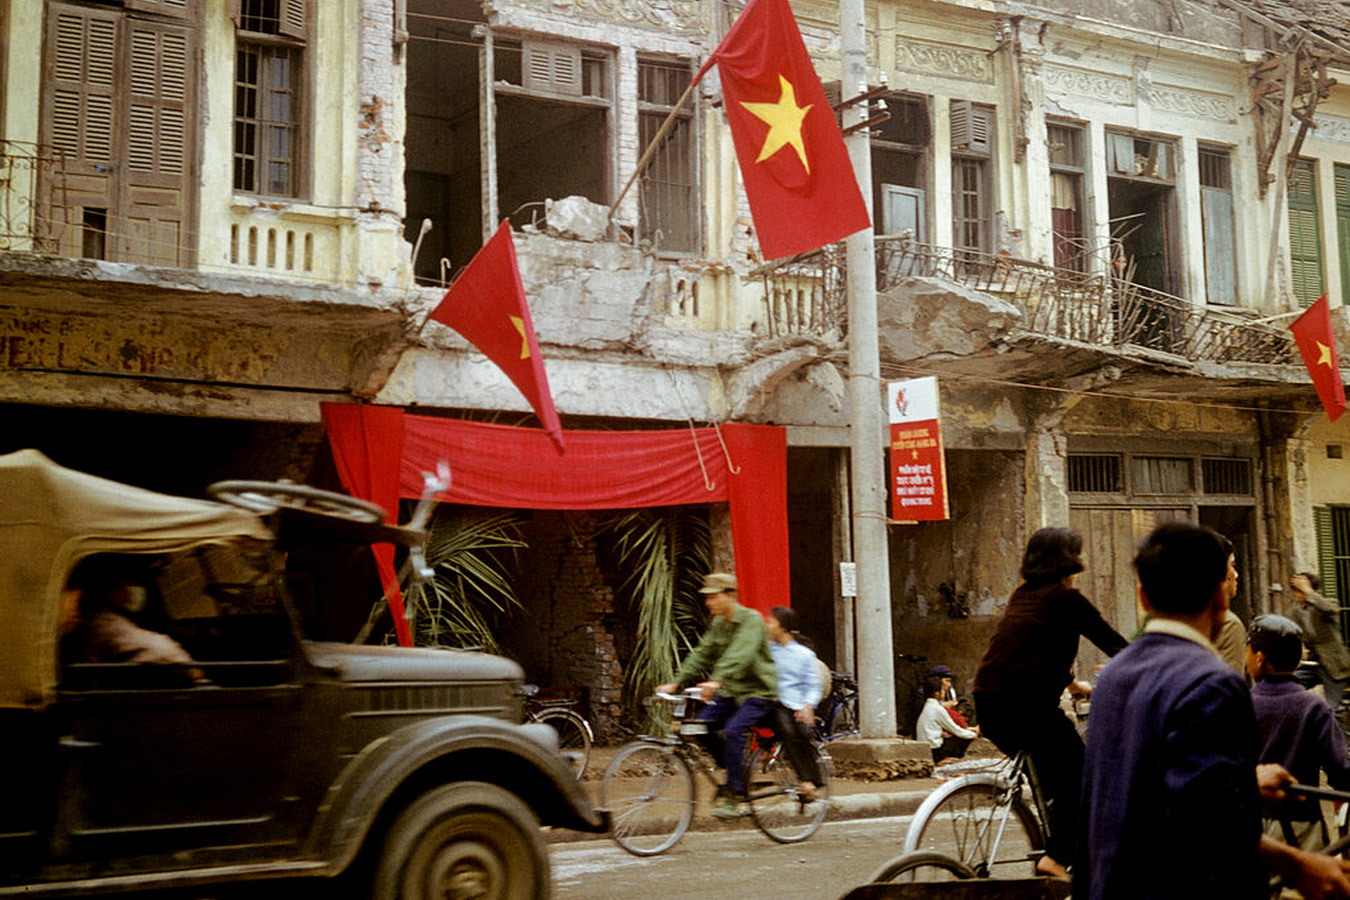 Chùm ảnh: Những nụ cười ở miền Bắc Việt Nam năm 1973